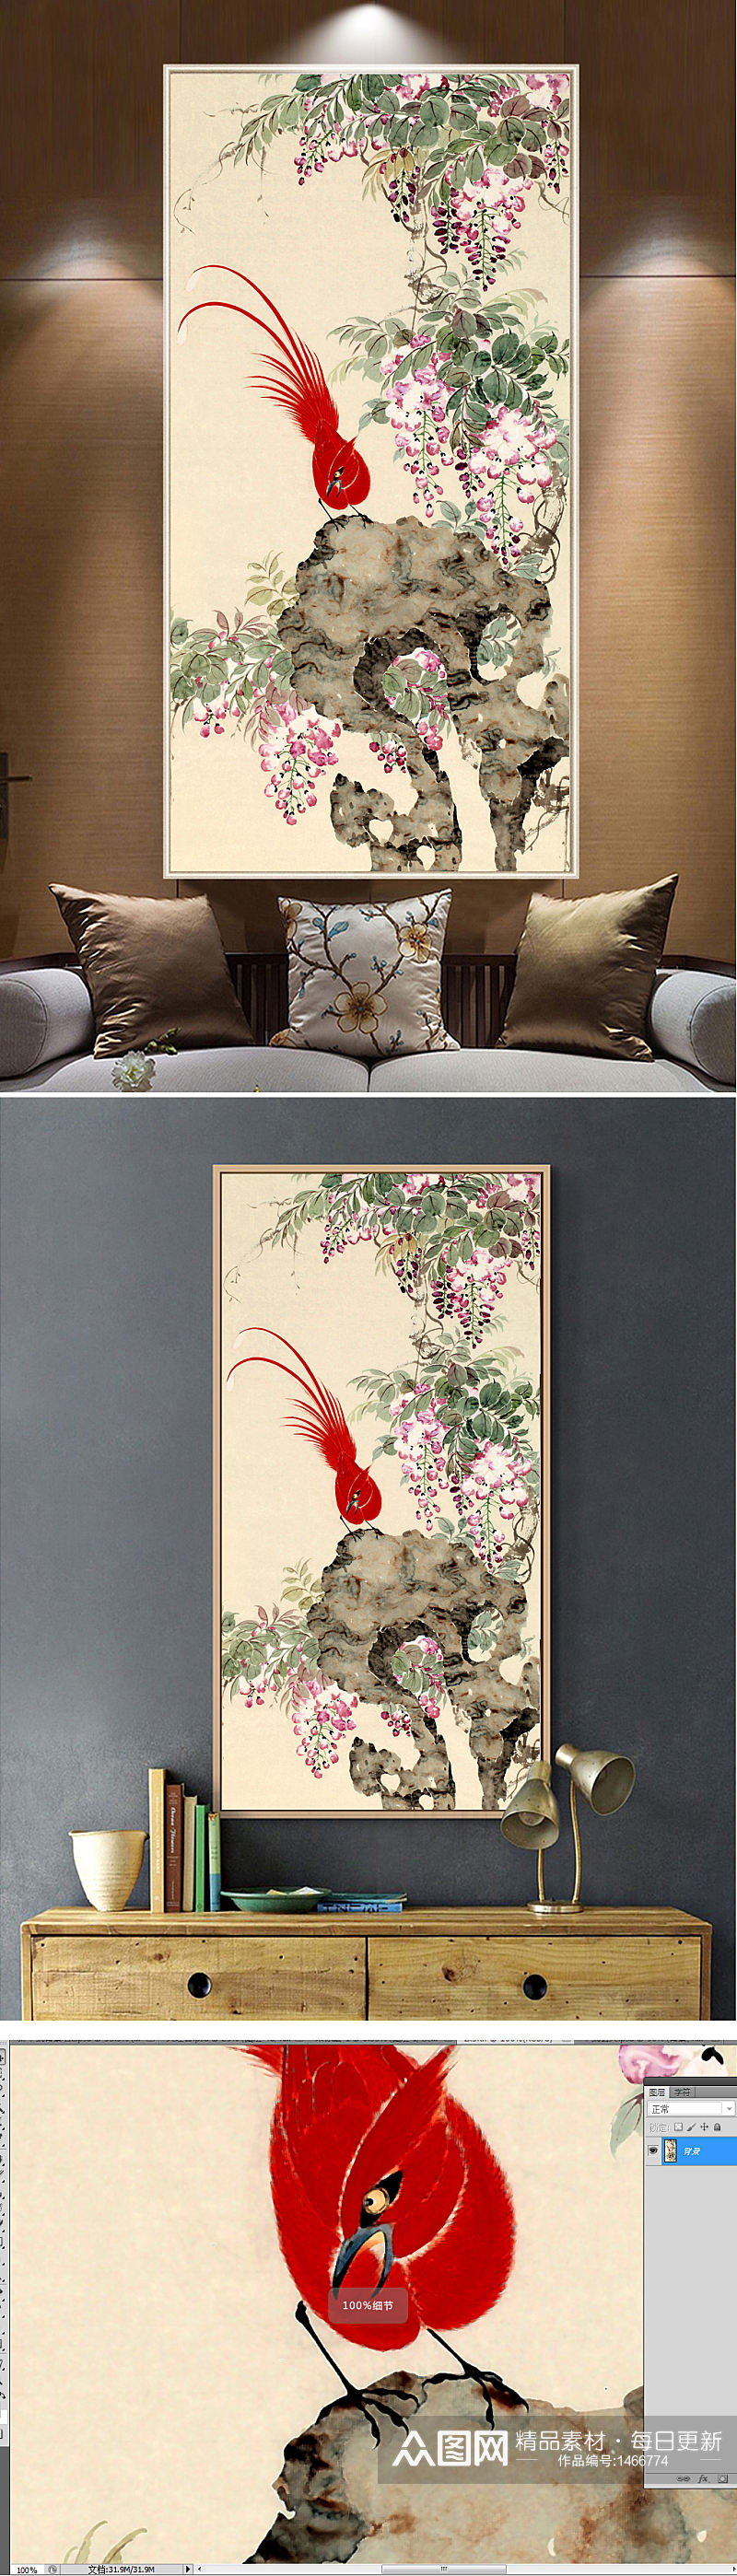 新中式喜鹊梅花手绘工笔花鸟玄关装饰画素材